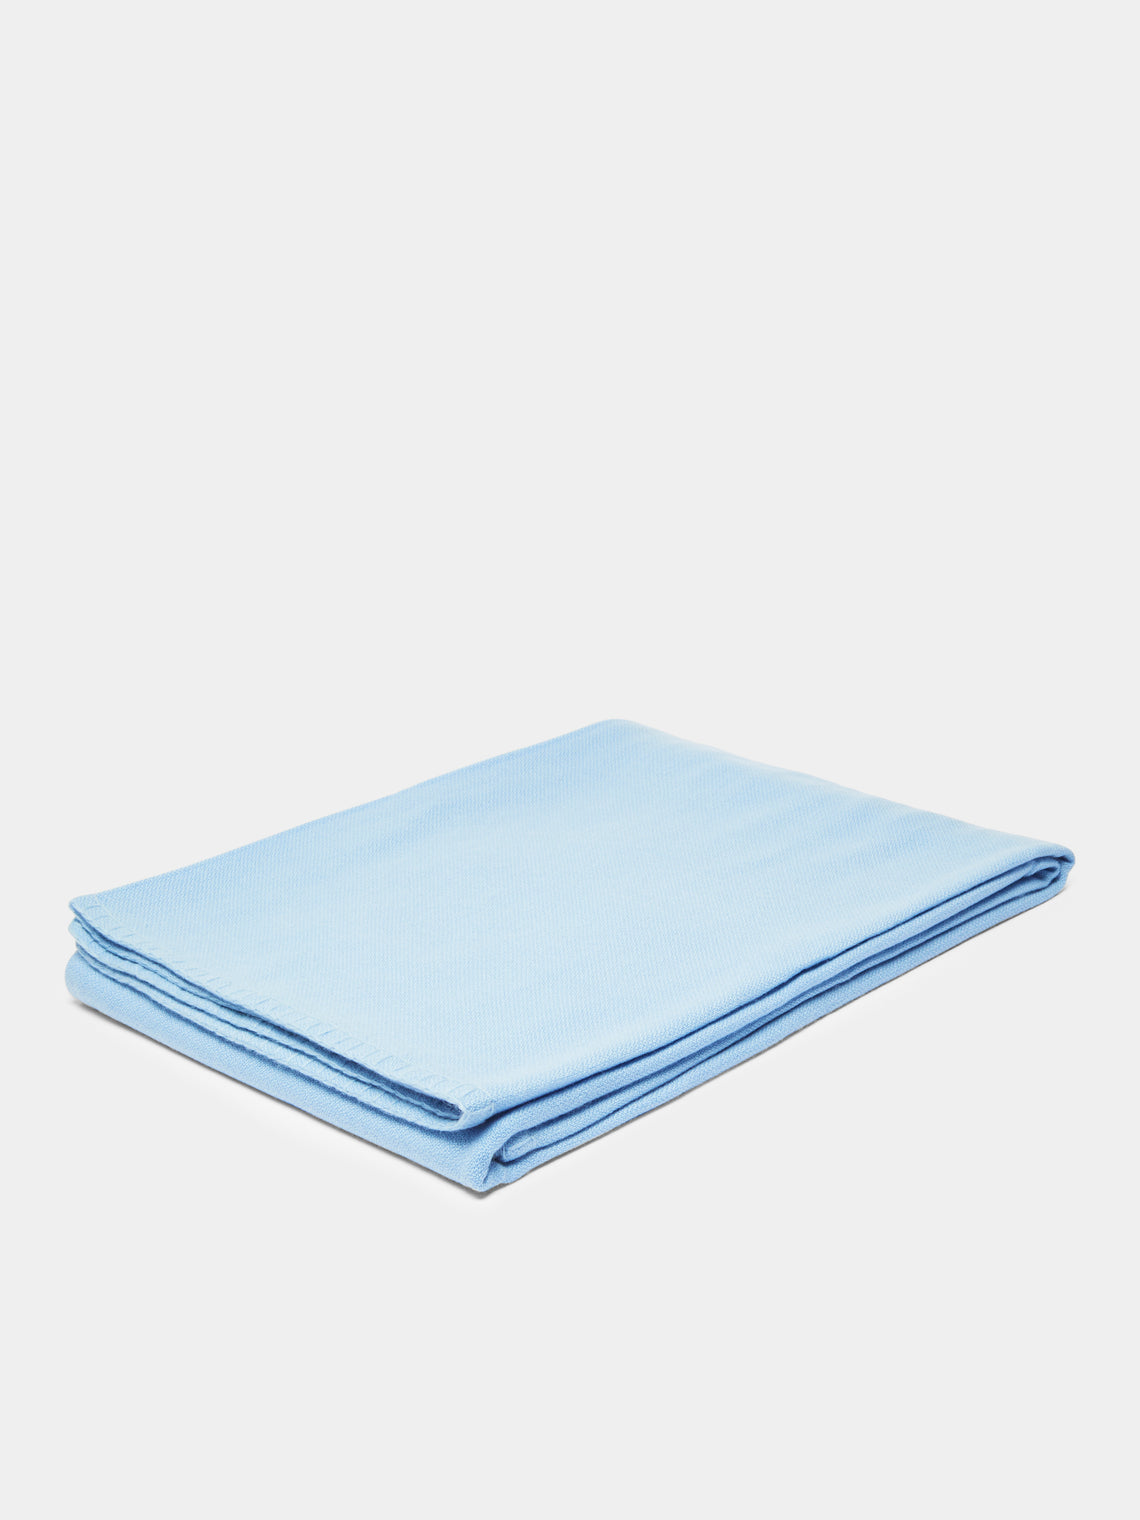 Denis Colomb - Blanket Stitch Cashmere Blanket - Light Blue - ABASK